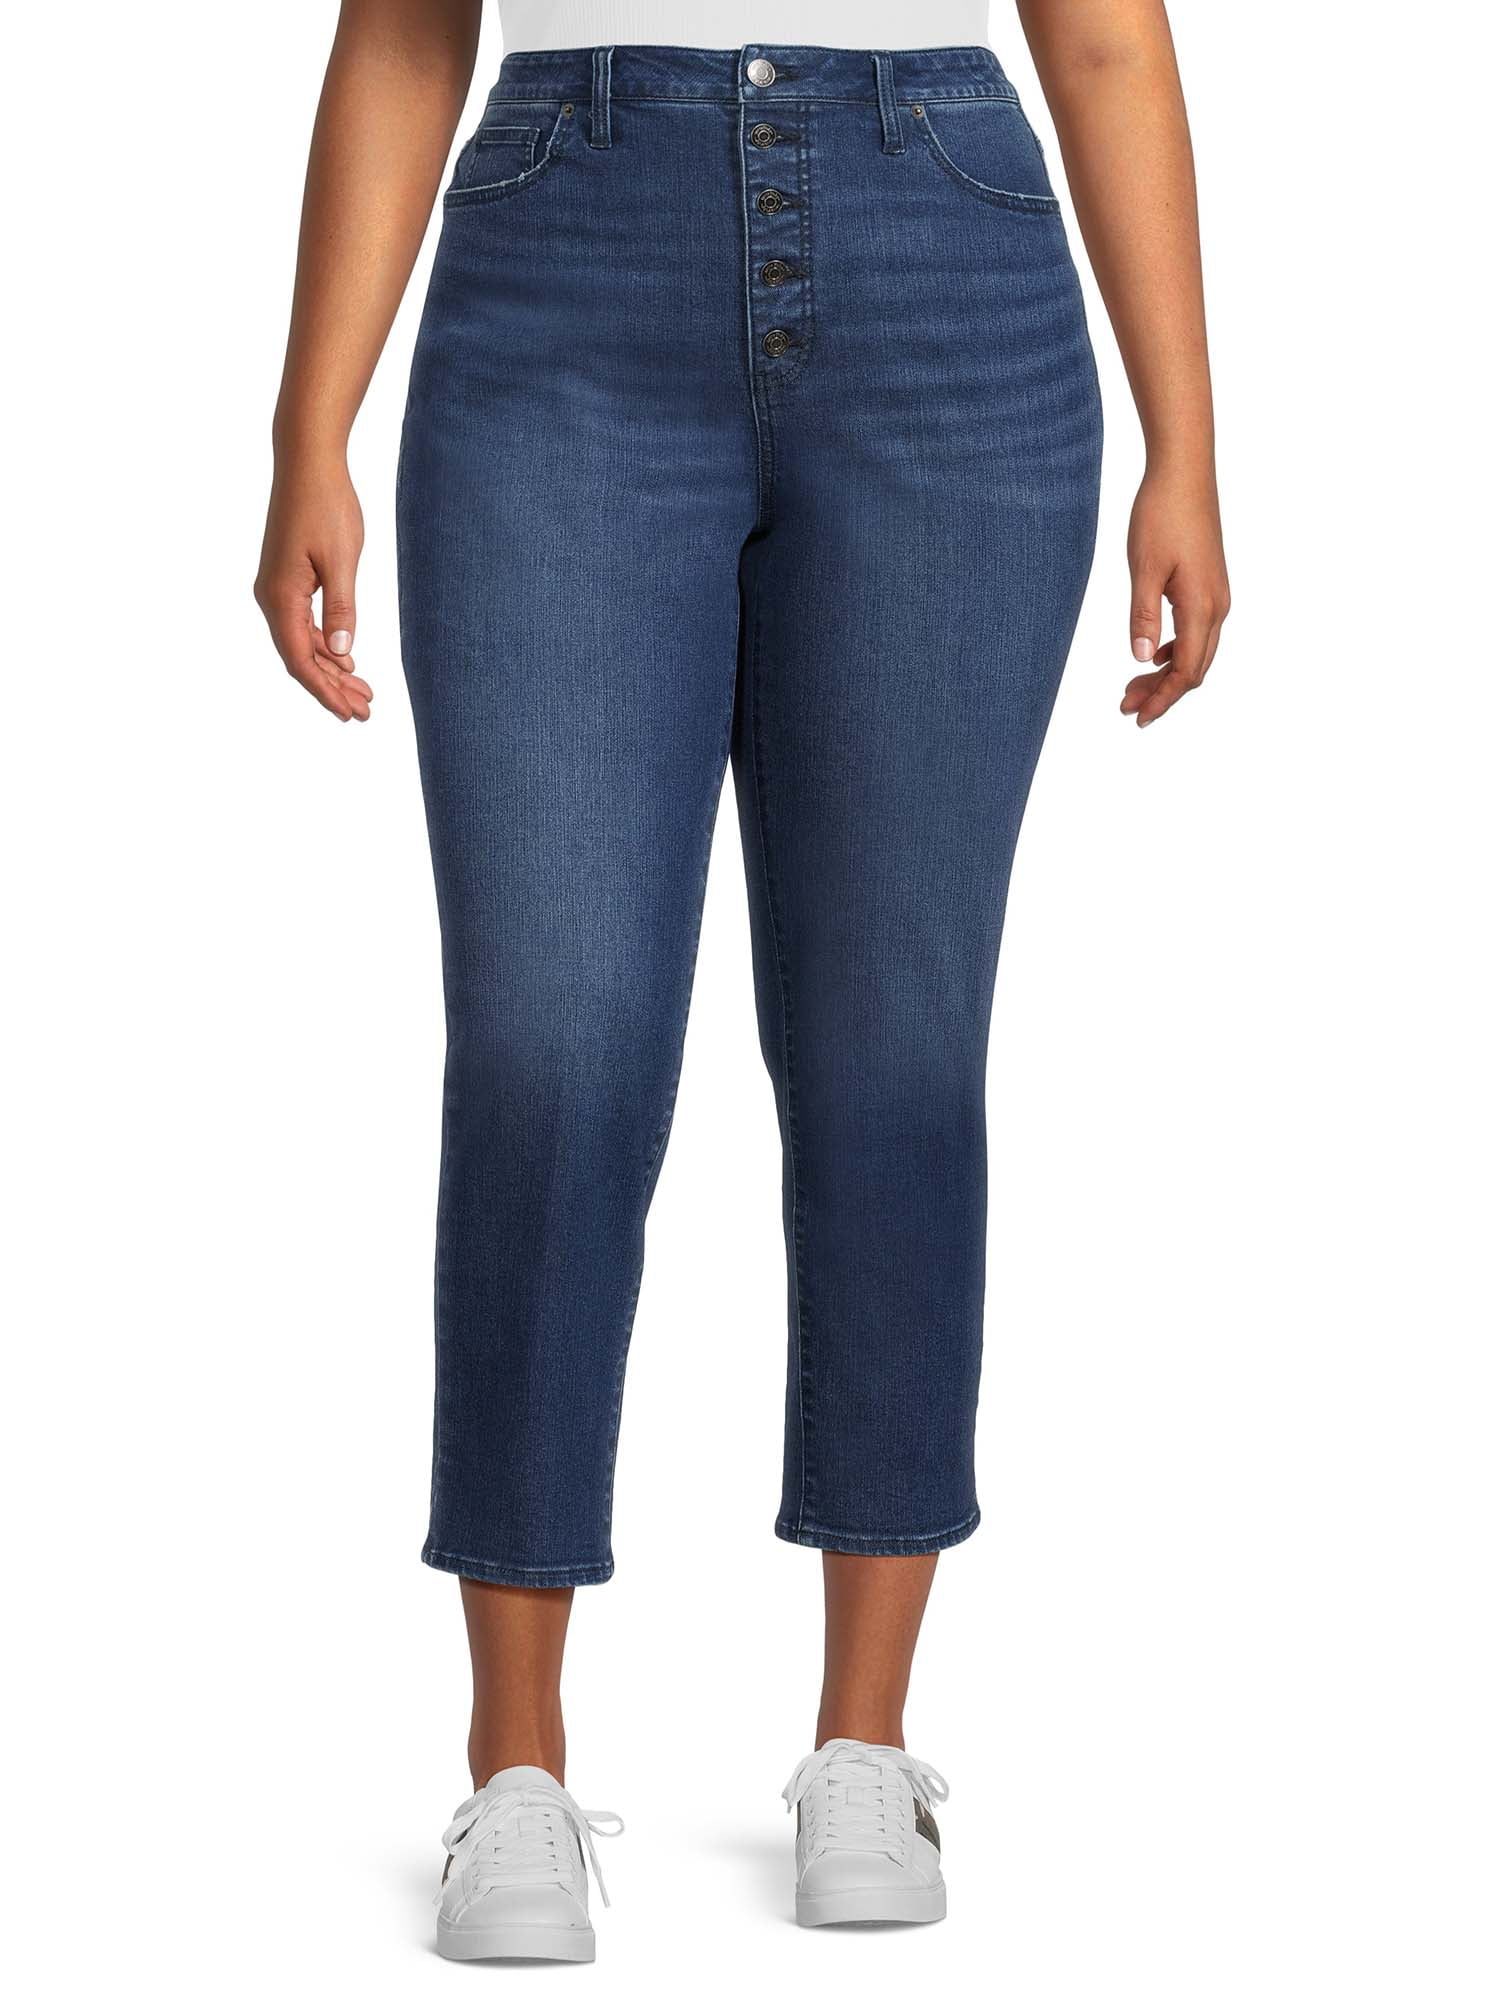 Terra & Sky Women's Plus Size 4-Way Stretch Curvy Jeans, 28